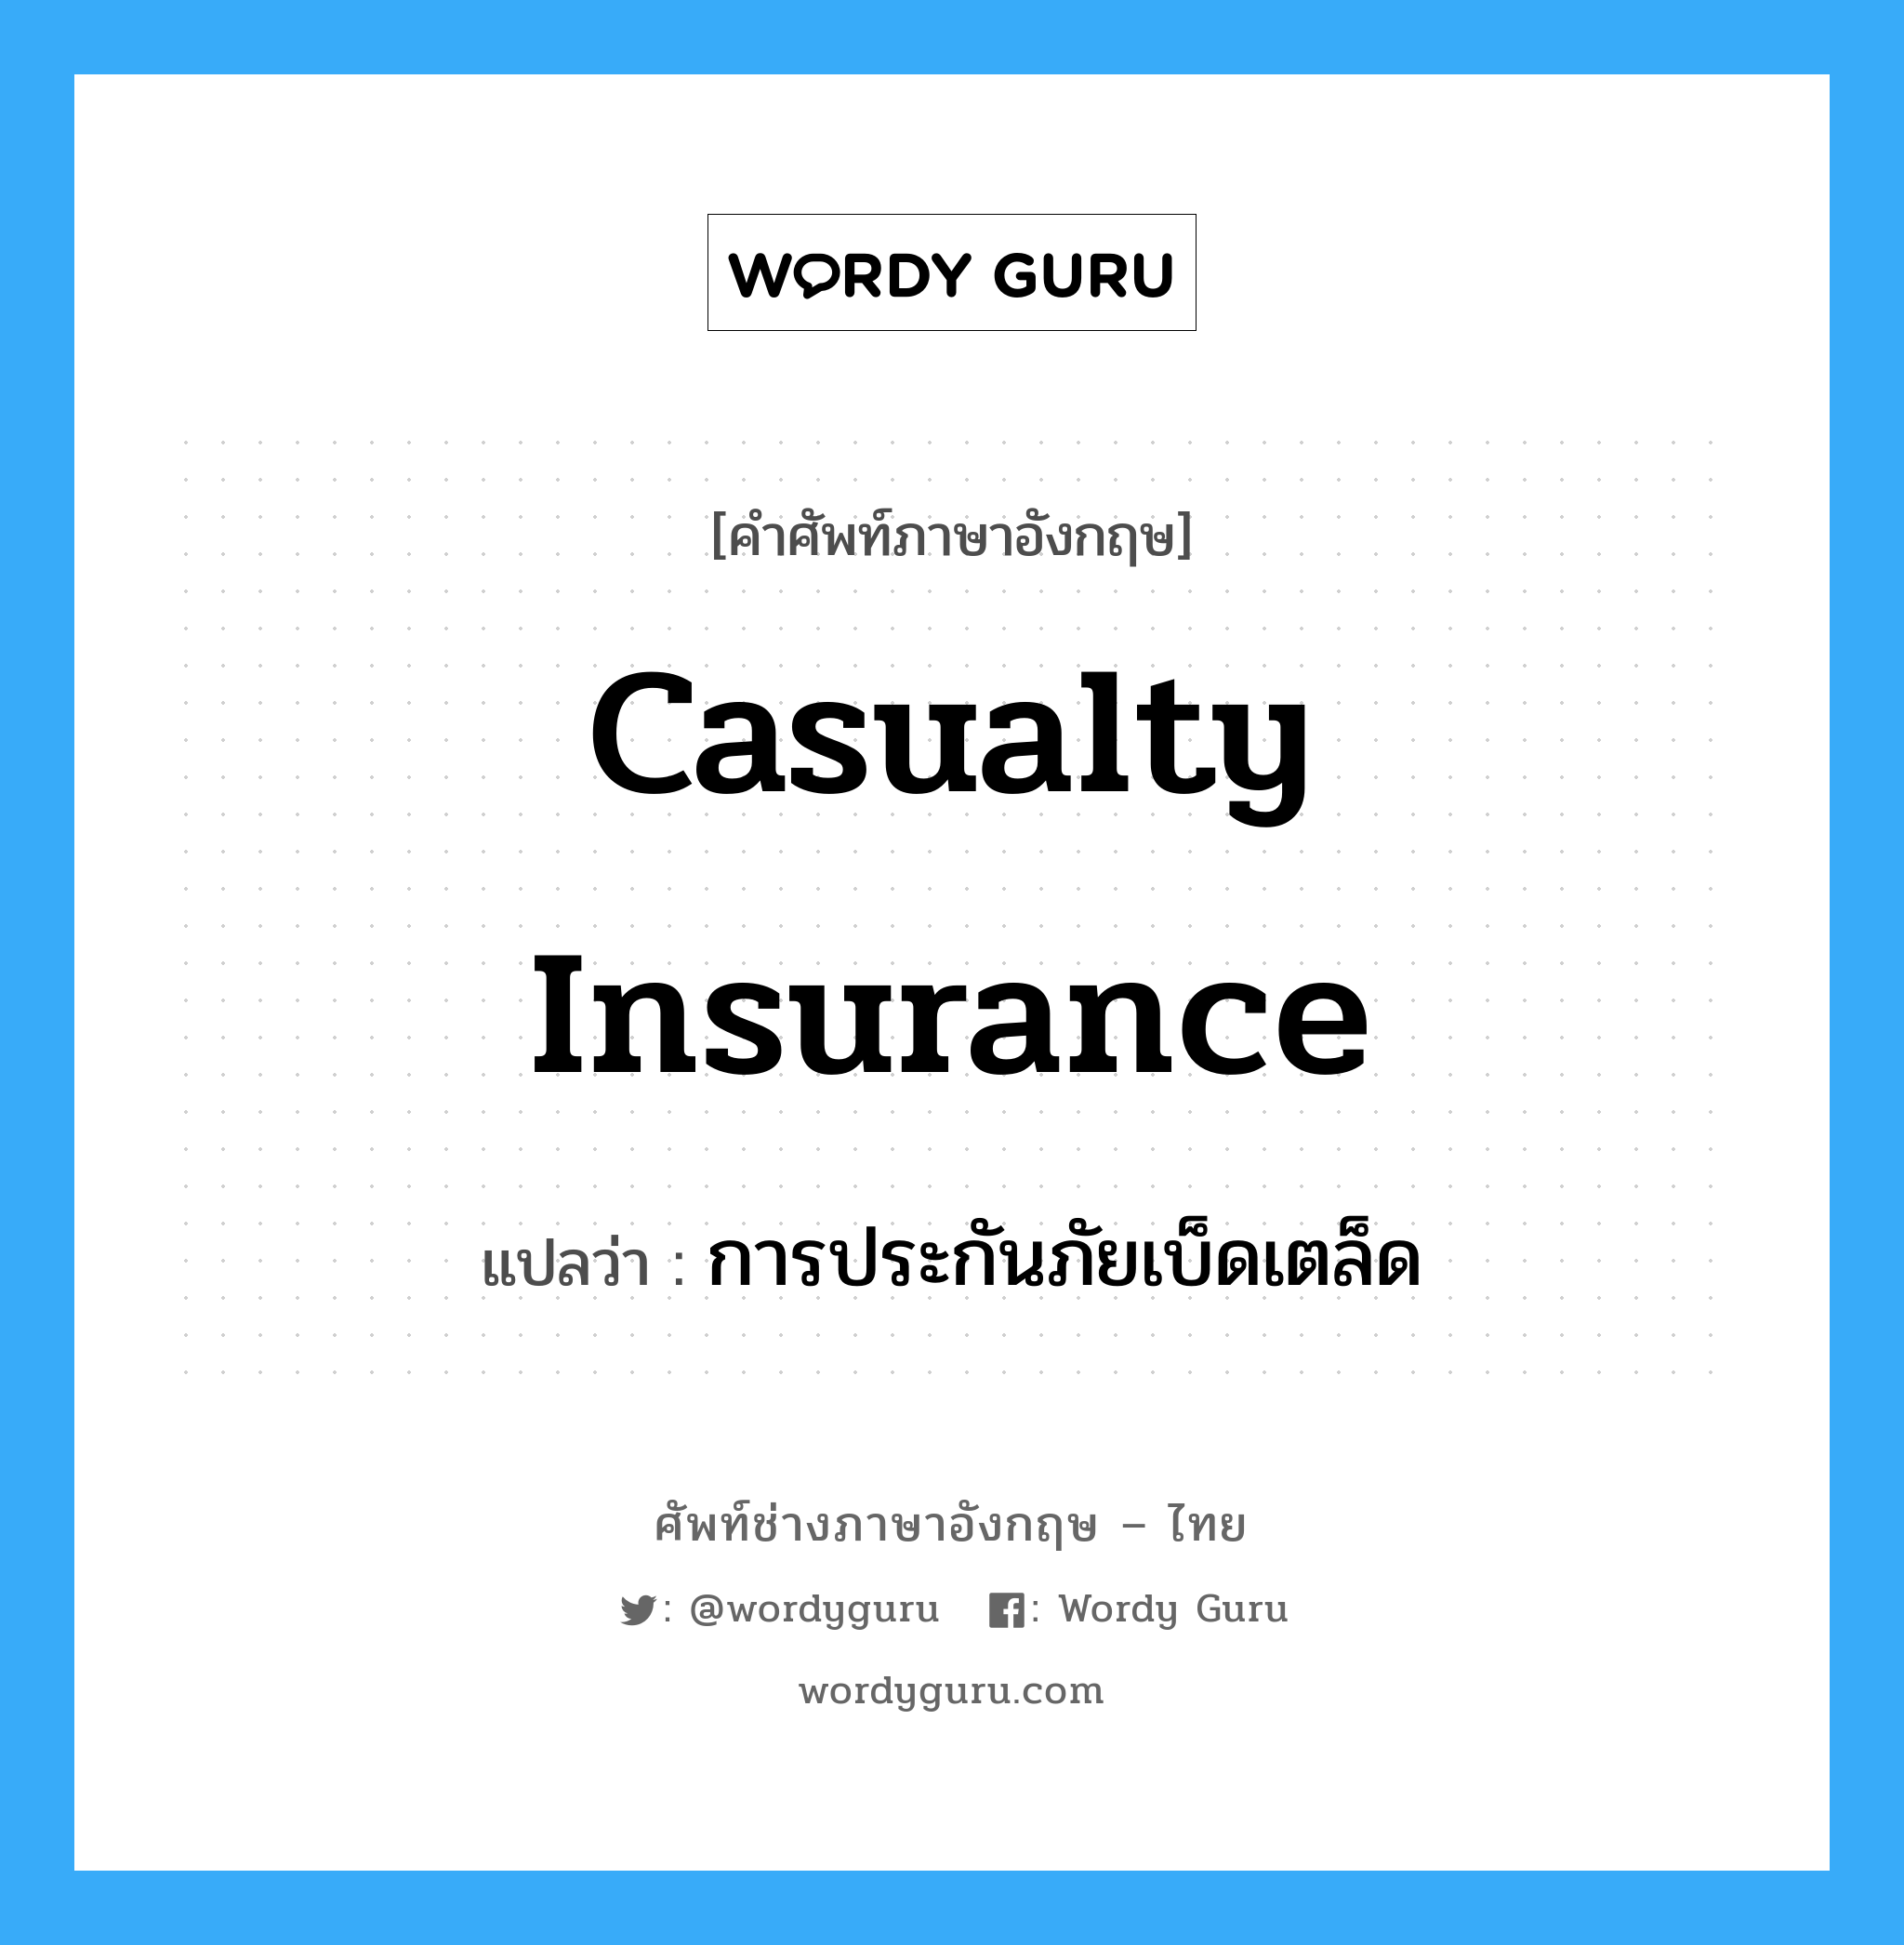 การประกันภัยเบ็ดเตล็ด ภาษาอังกฤษ?, คำศัพท์ช่างภาษาอังกฤษ - ไทย การประกันภัยเบ็ดเตล็ด คำศัพท์ภาษาอังกฤษ การประกันภัยเบ็ดเตล็ด แปลว่า Casualty Insurance